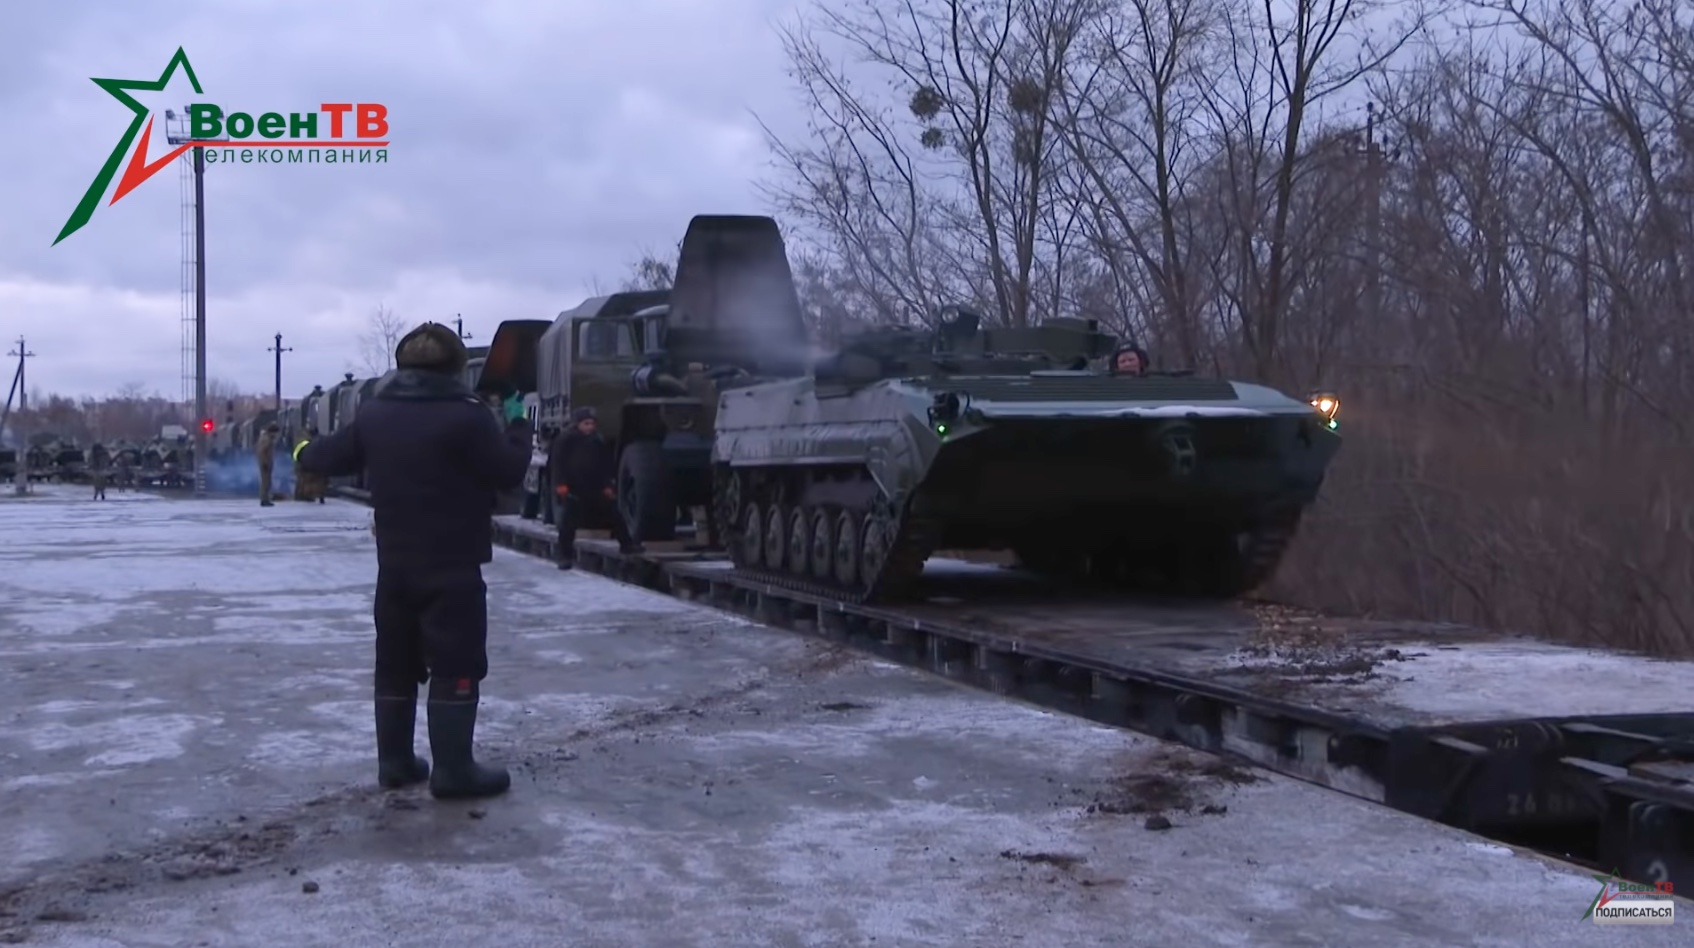 Az orosz csapatok kedden már útnak is indultak, februárban megint Fehéroroszországra figyel majd a világ